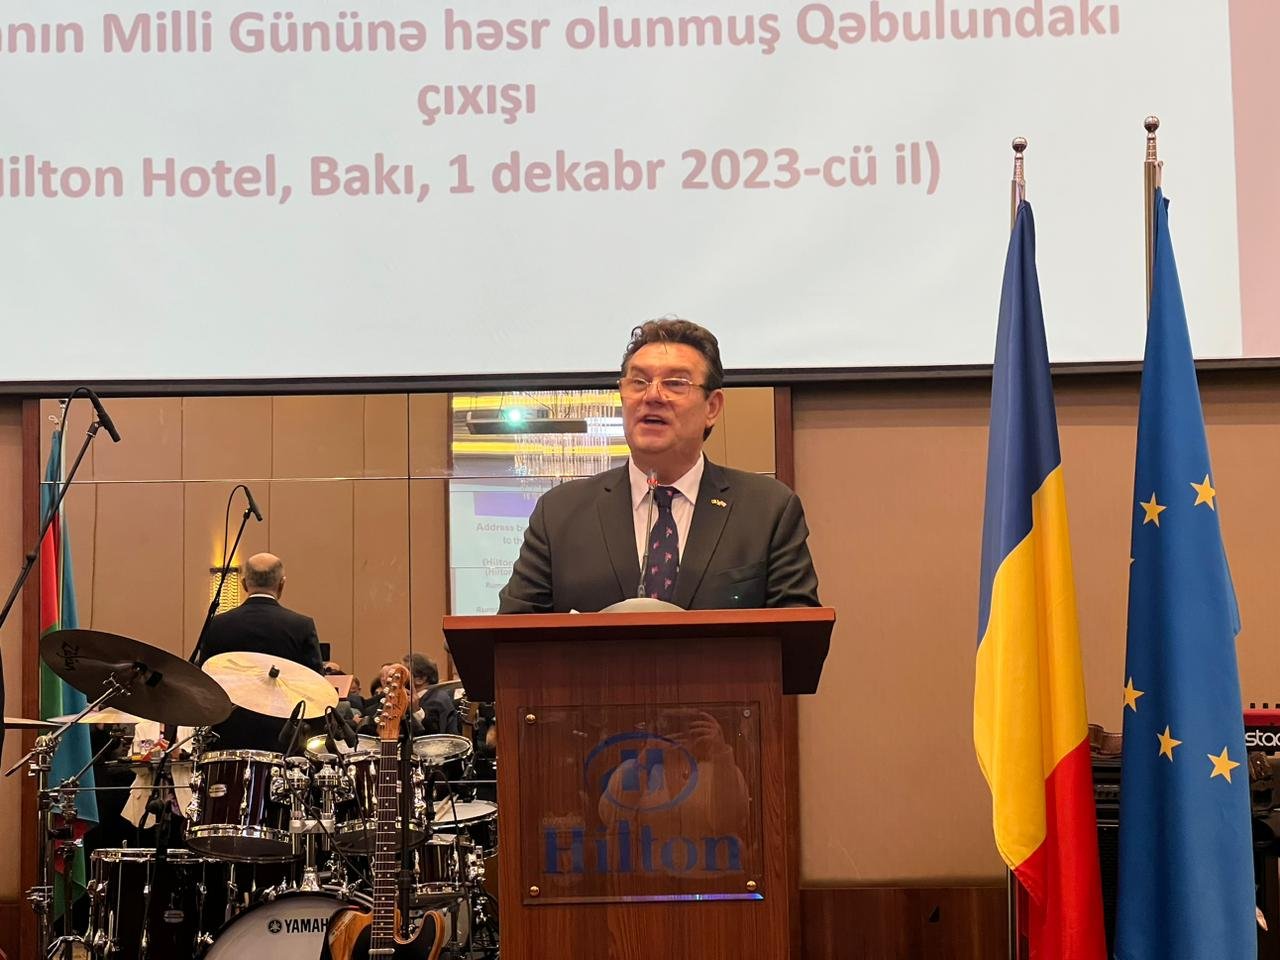 Ожидаются результаты исследования по проекту транспортировки СПГ из Азербайджана в Румынию - посол